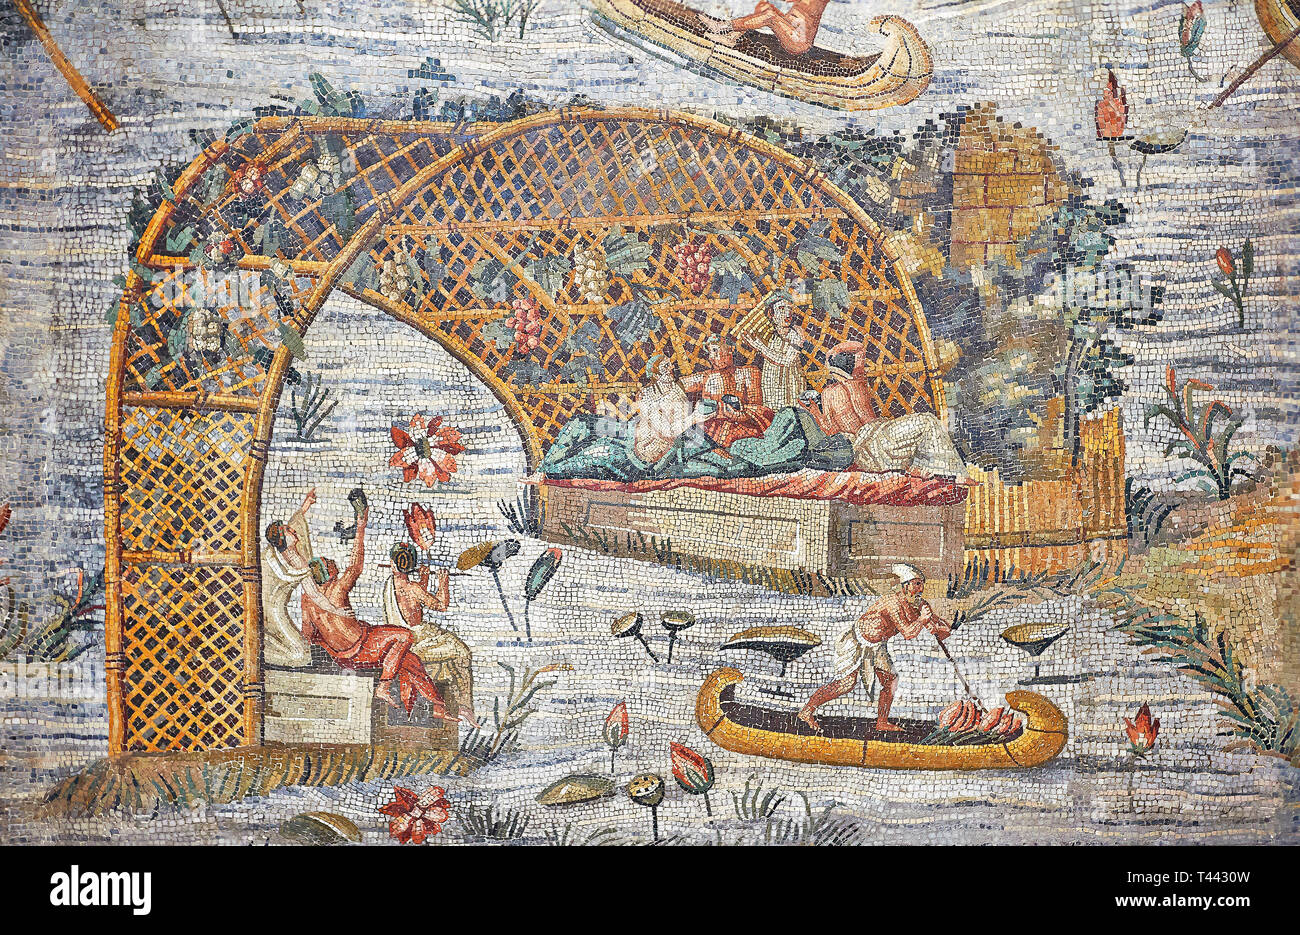 Dettaglio foto di una canoa sul Nilo allagato il Nilo dal famoso Roman nilotica Ellenistico Romano paesaggio Palestrina mosaico o il mosaico del Nilo di Foto Stock